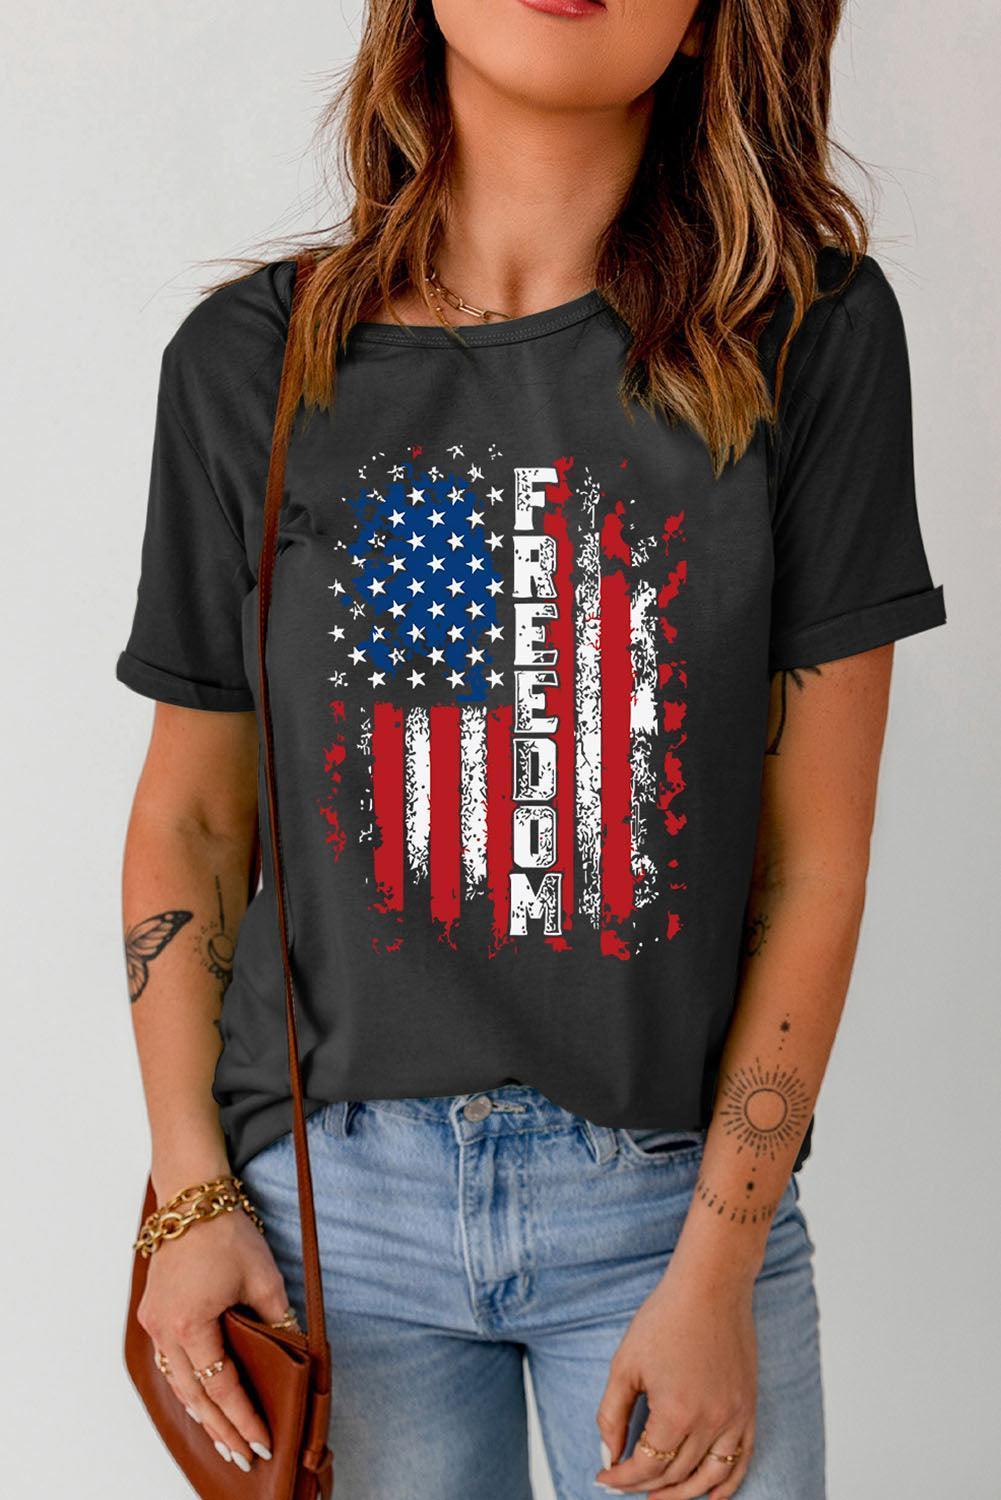 Freedom Crew Neck American Flag Tee Shirt - MXSTUDIO.COM